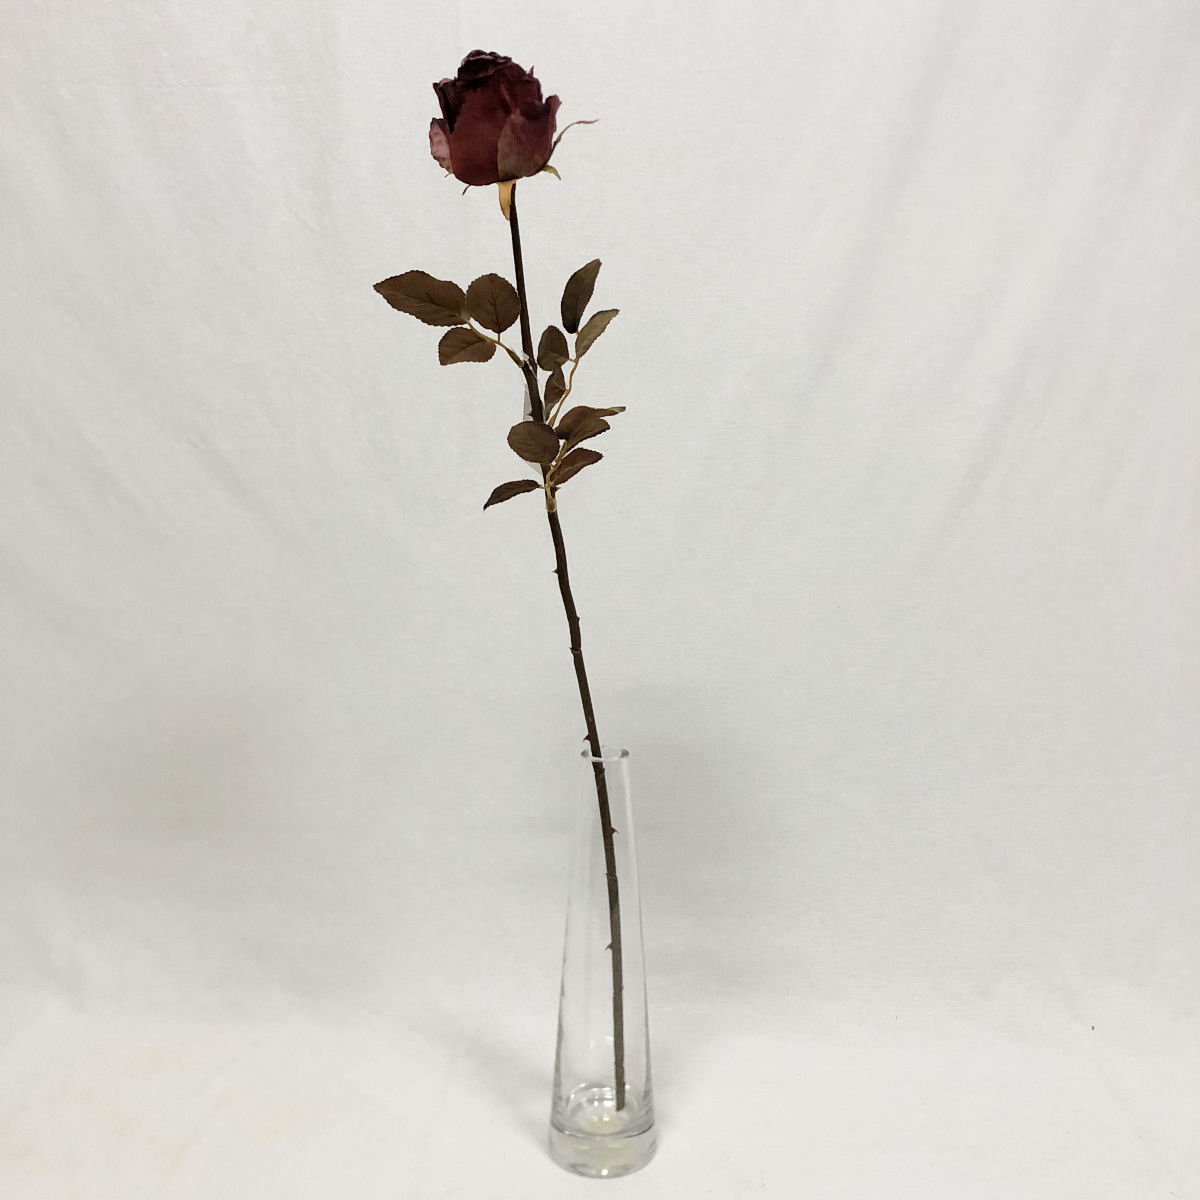 Generico-Shop-Fiori e Piante-Fiori Artificiali-Rosa Sophia Winter H 75 cm Fiore0-41